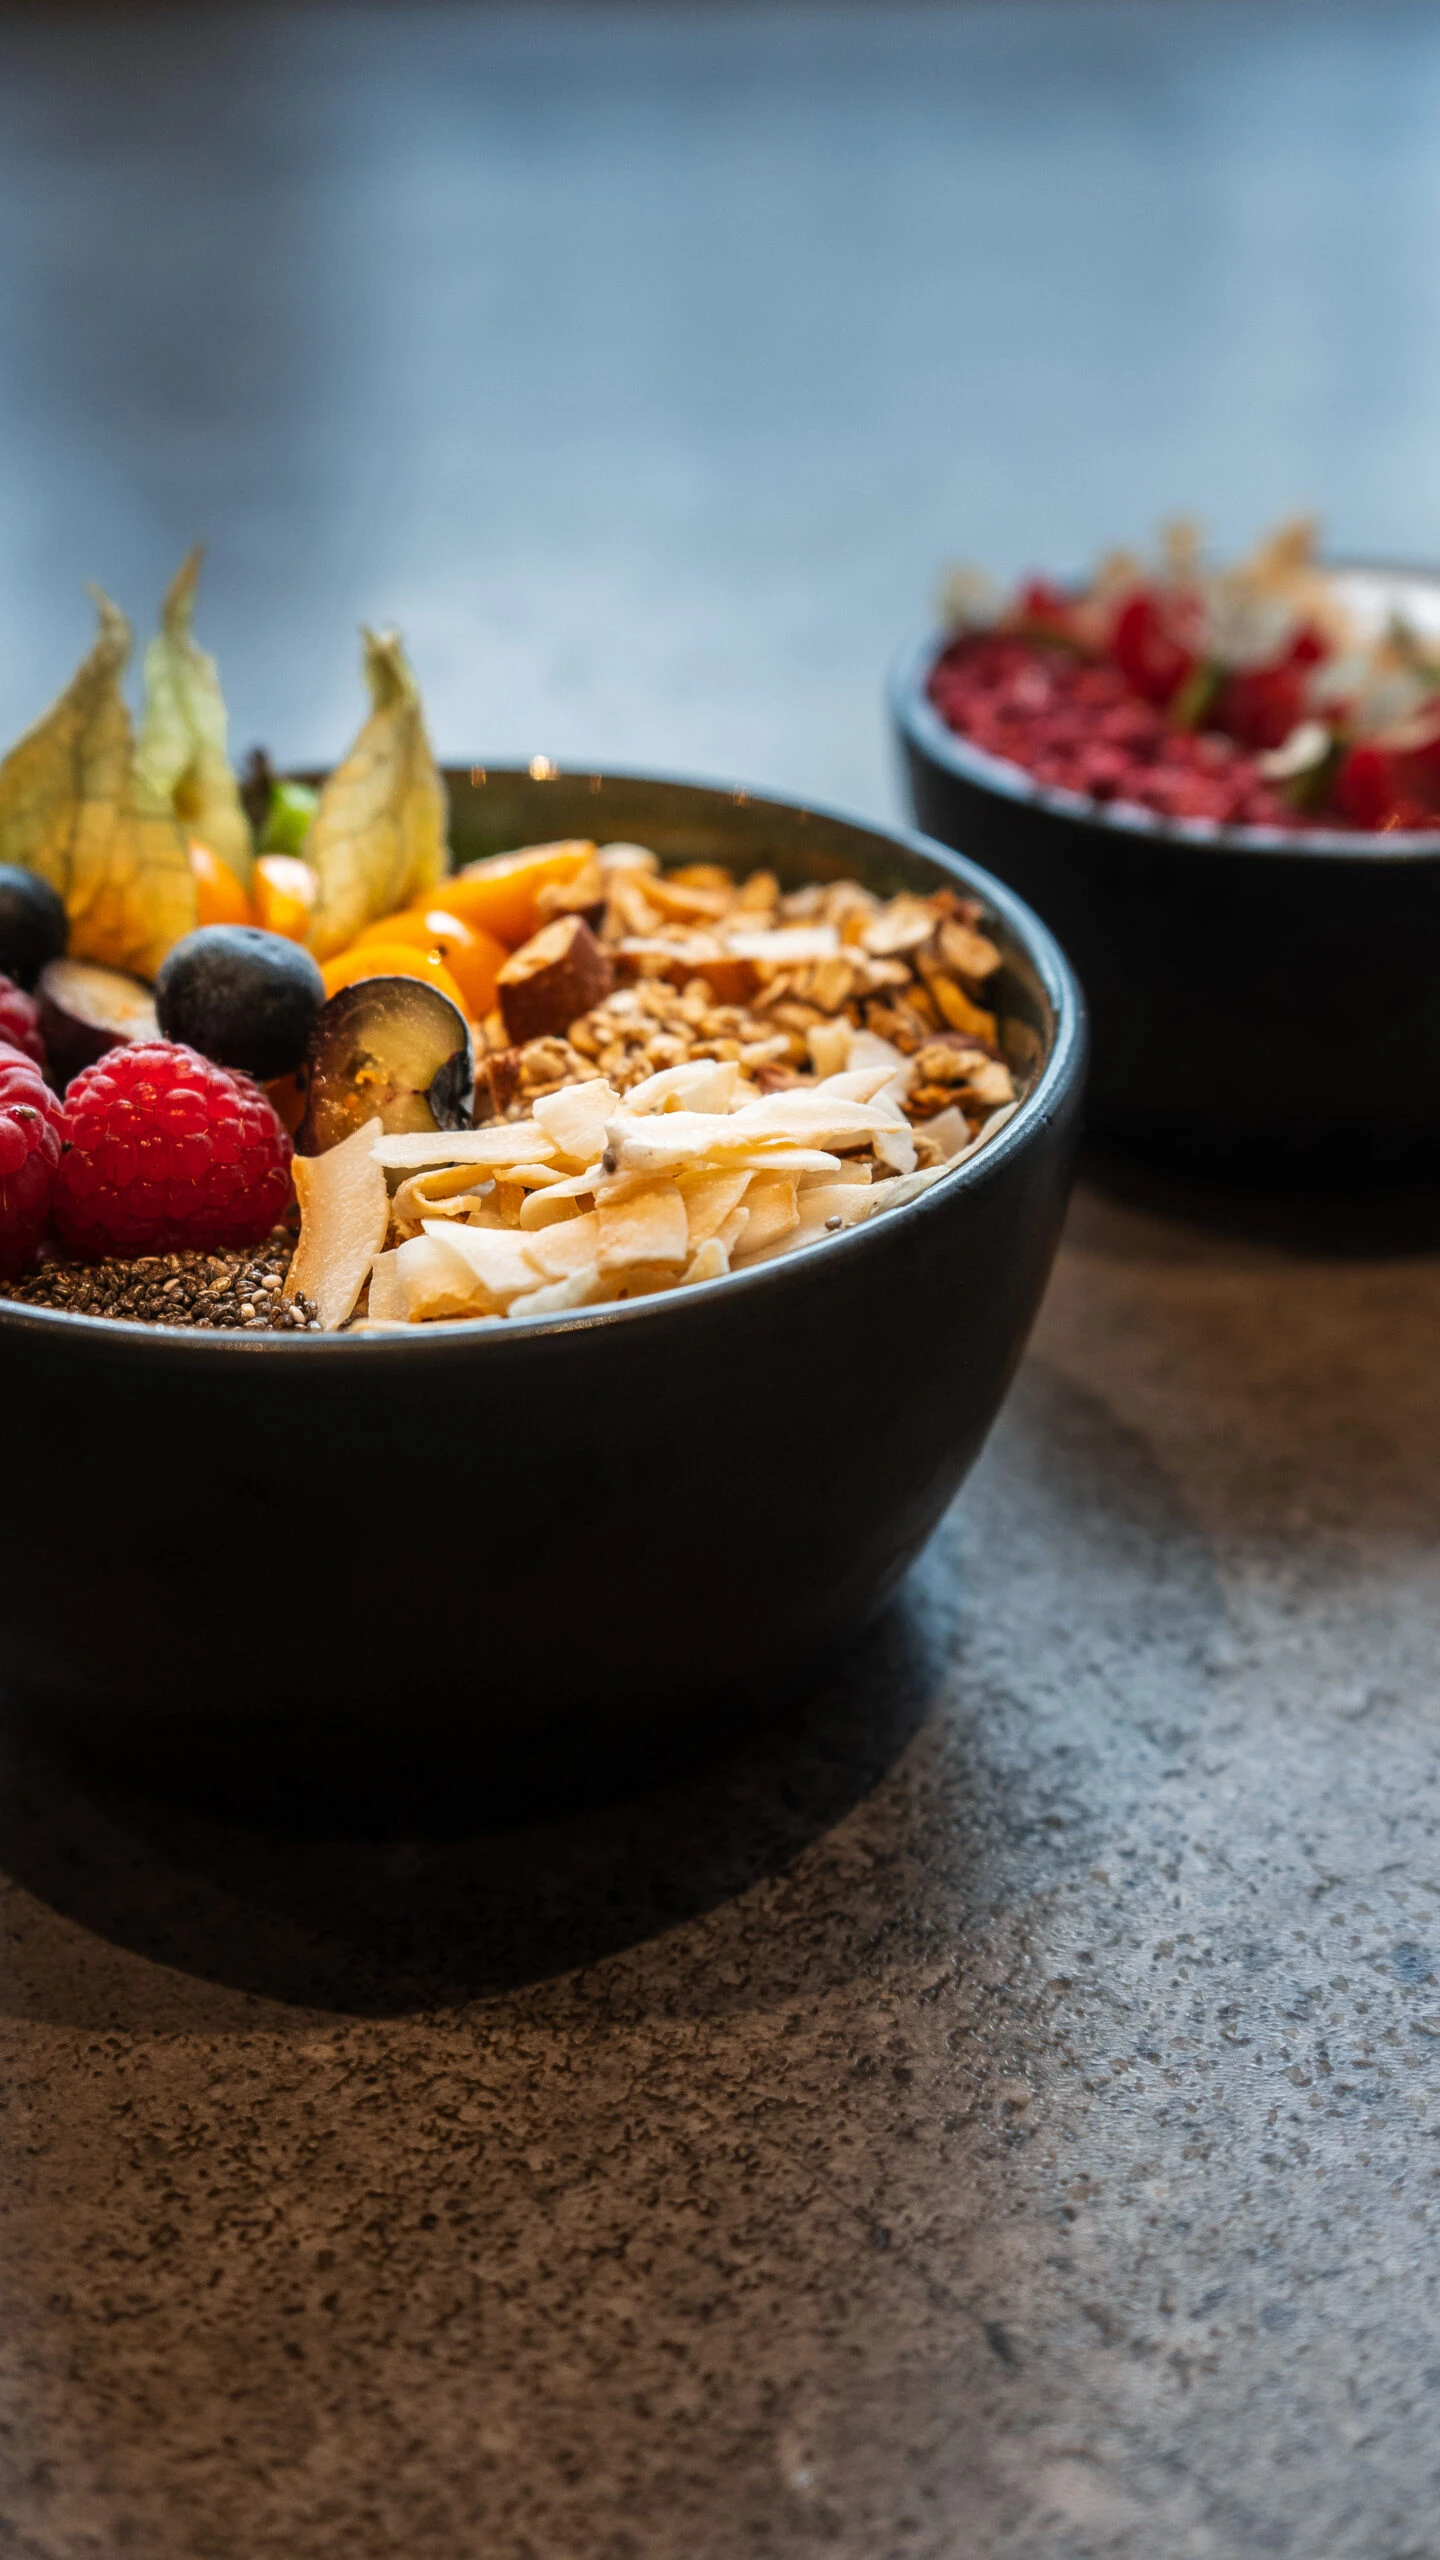 Café Bryggen lækker morgenmad med Yogurt, Granola og Friske bær